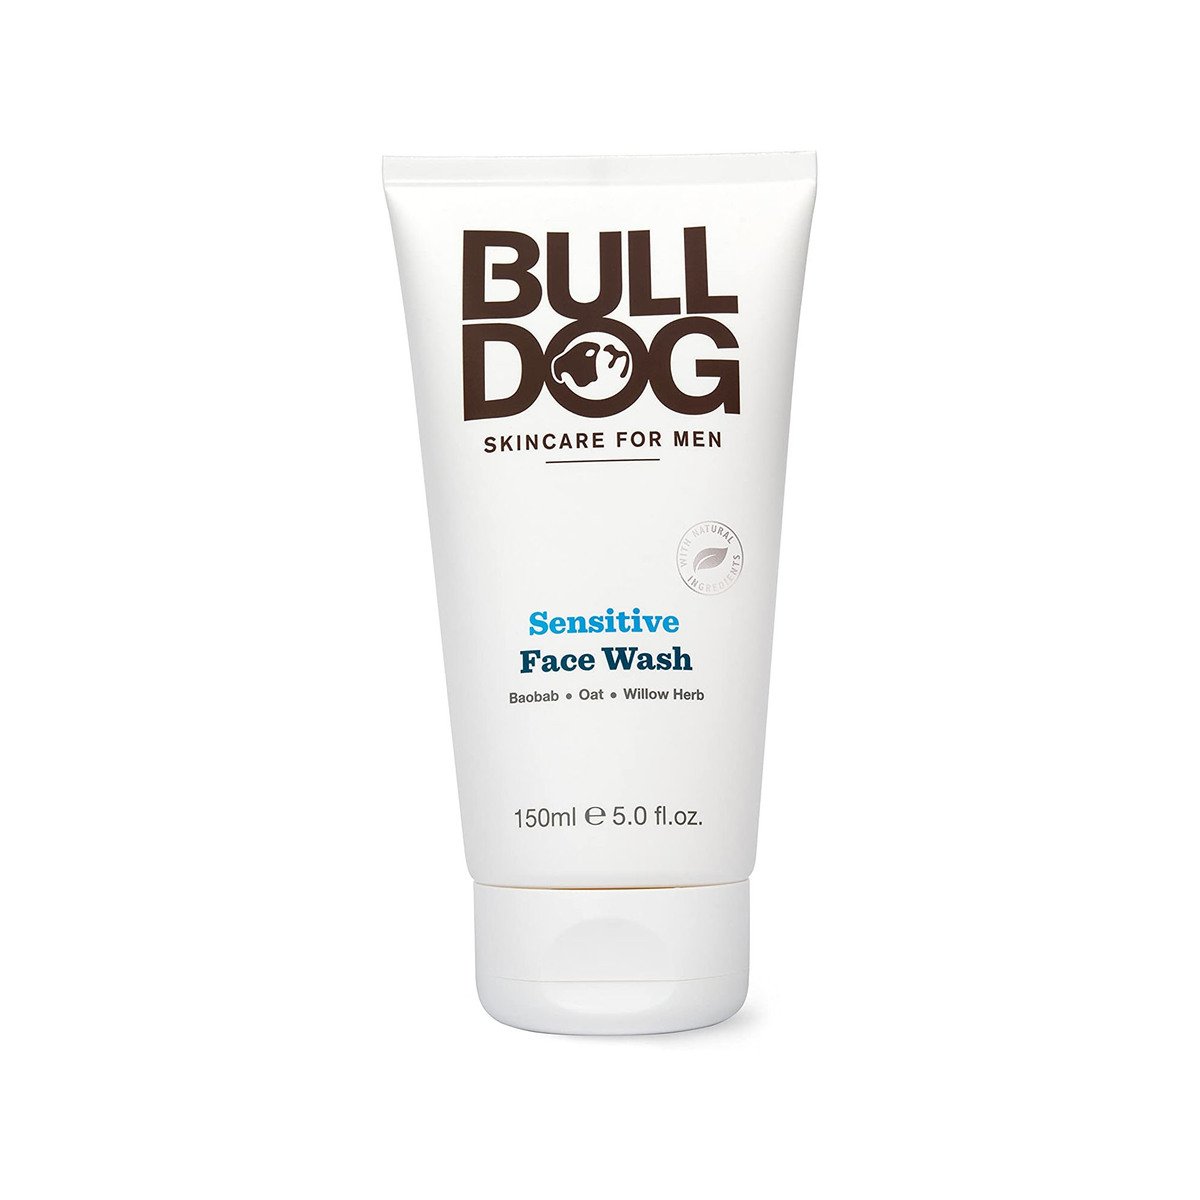 Bull Dog Skincare Sensitive Face Wash For Men, 150 ml